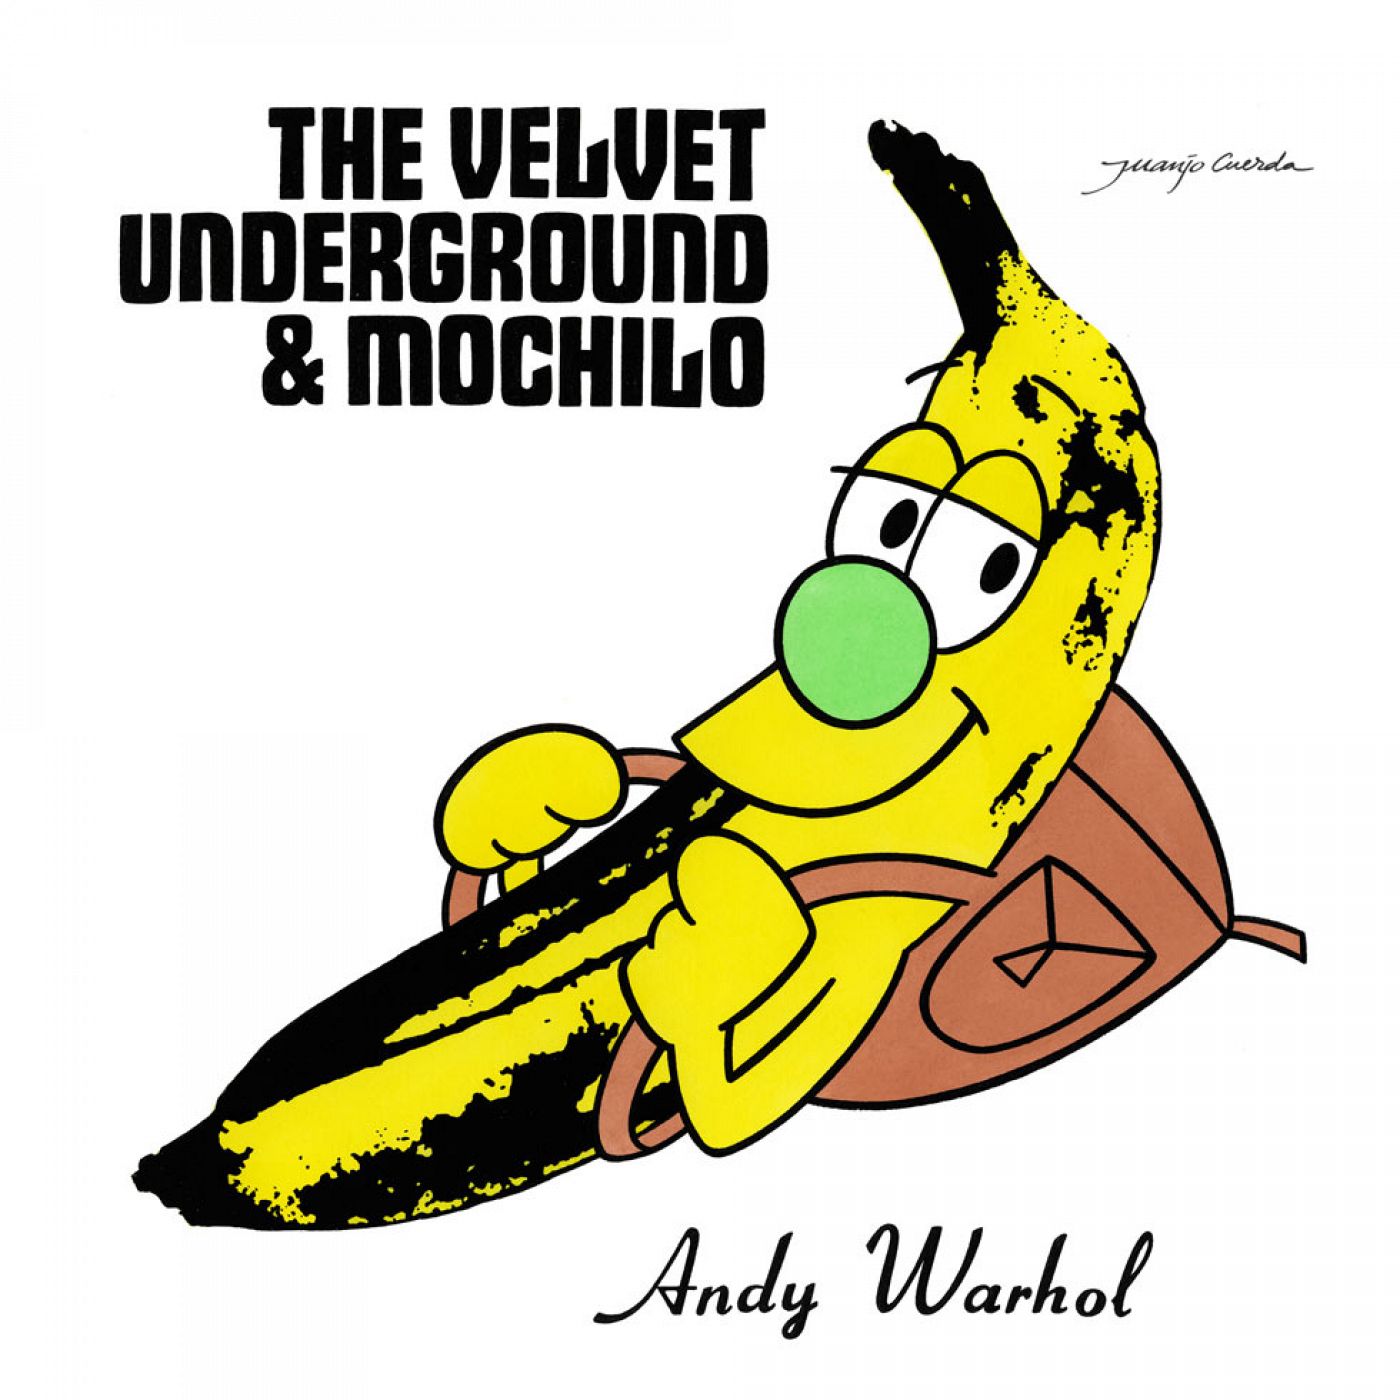 Mochilo, de Los Fruitis , protagoniza la versión del album The Velvet Underground & Nico  pintada por Juanjo Cuerda.